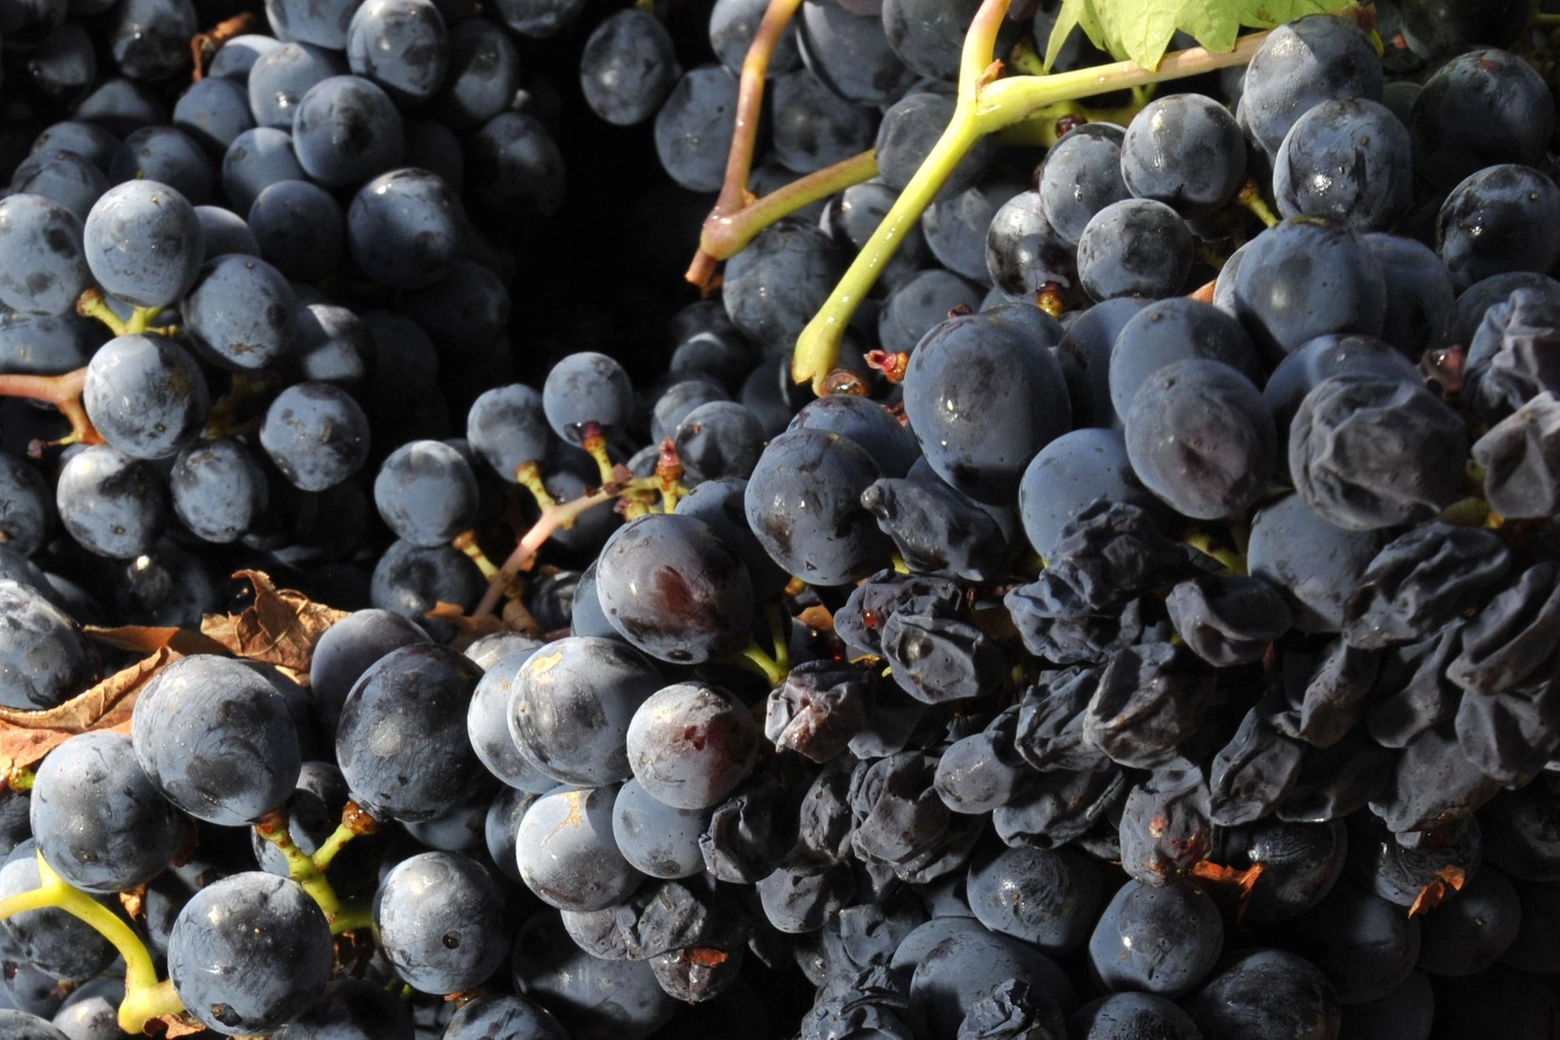 Vinuva, Festival del Vino e dell'Uva